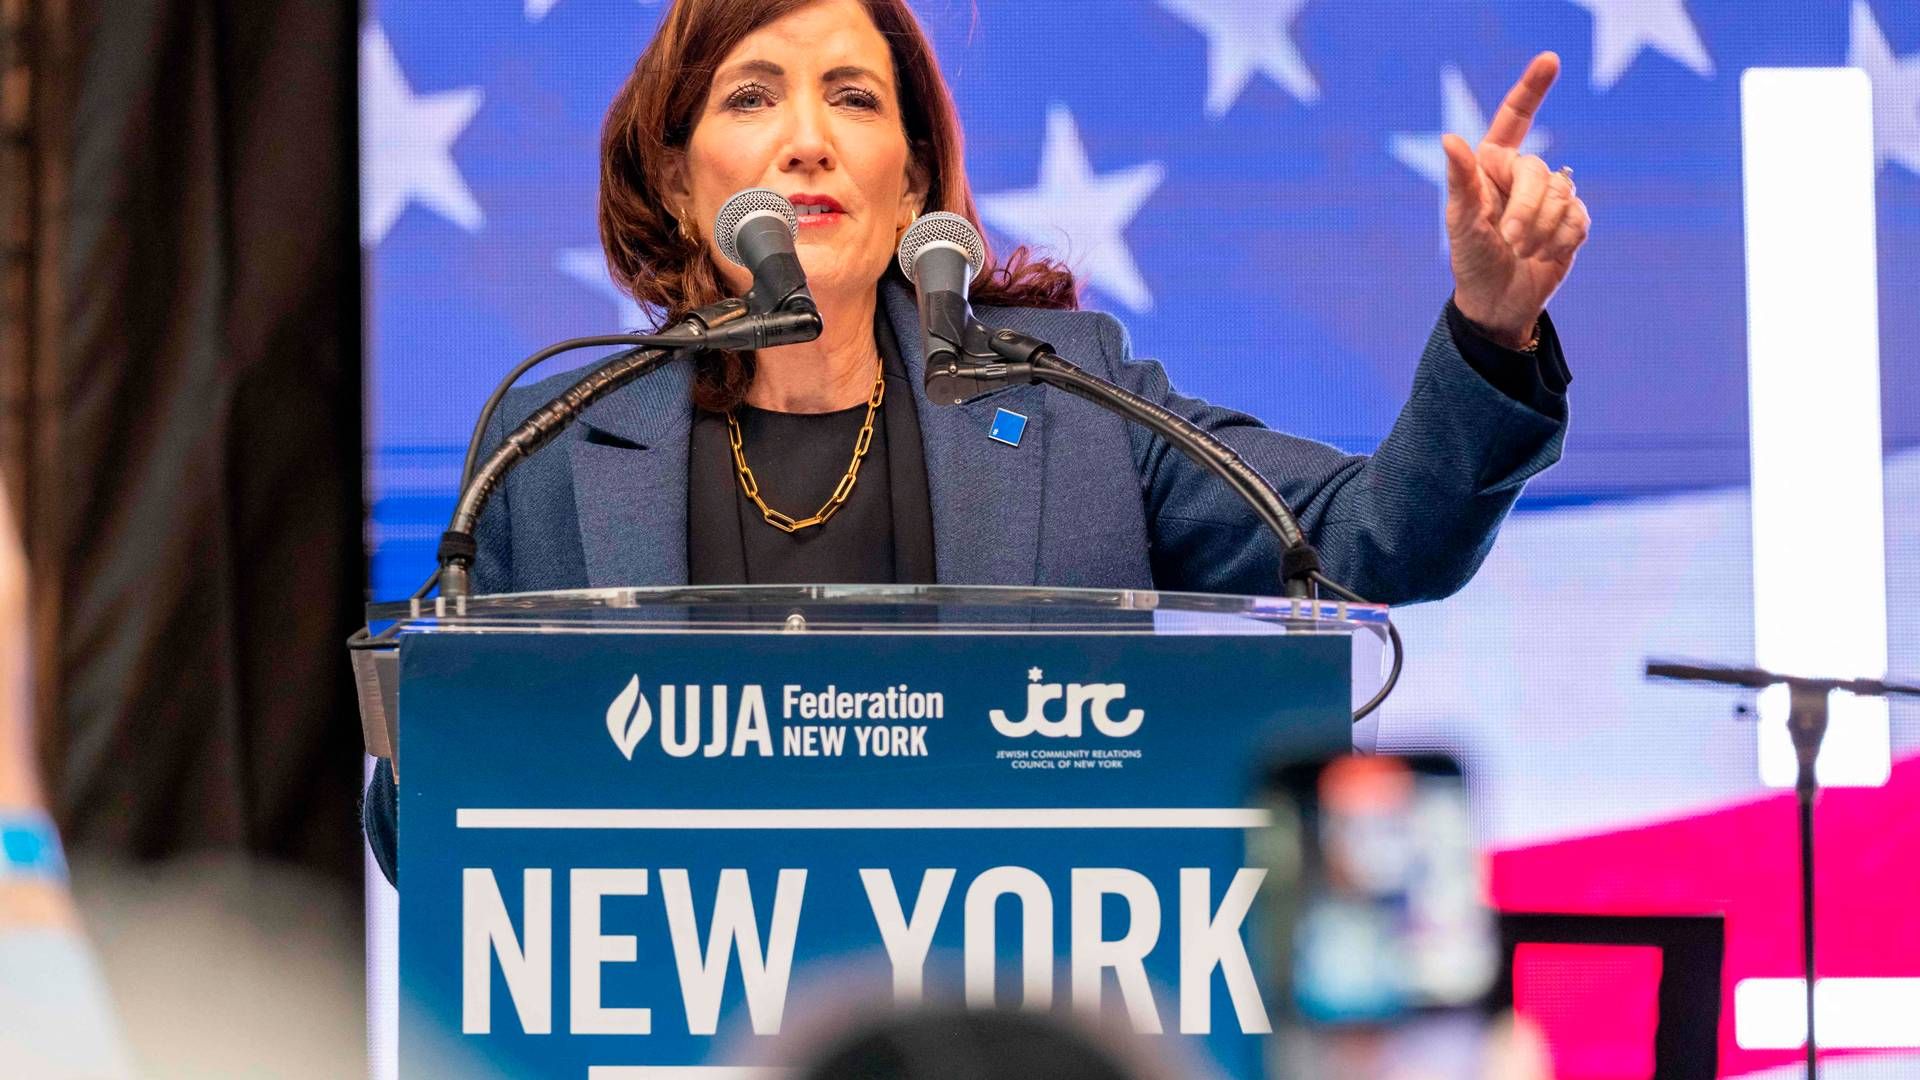 GUVERNØR: Kathy Hochul er guvernør i delstaten New York, og fredag nedla hun veto mot en ny transmisjonslov. | Foto: Spencer Platt